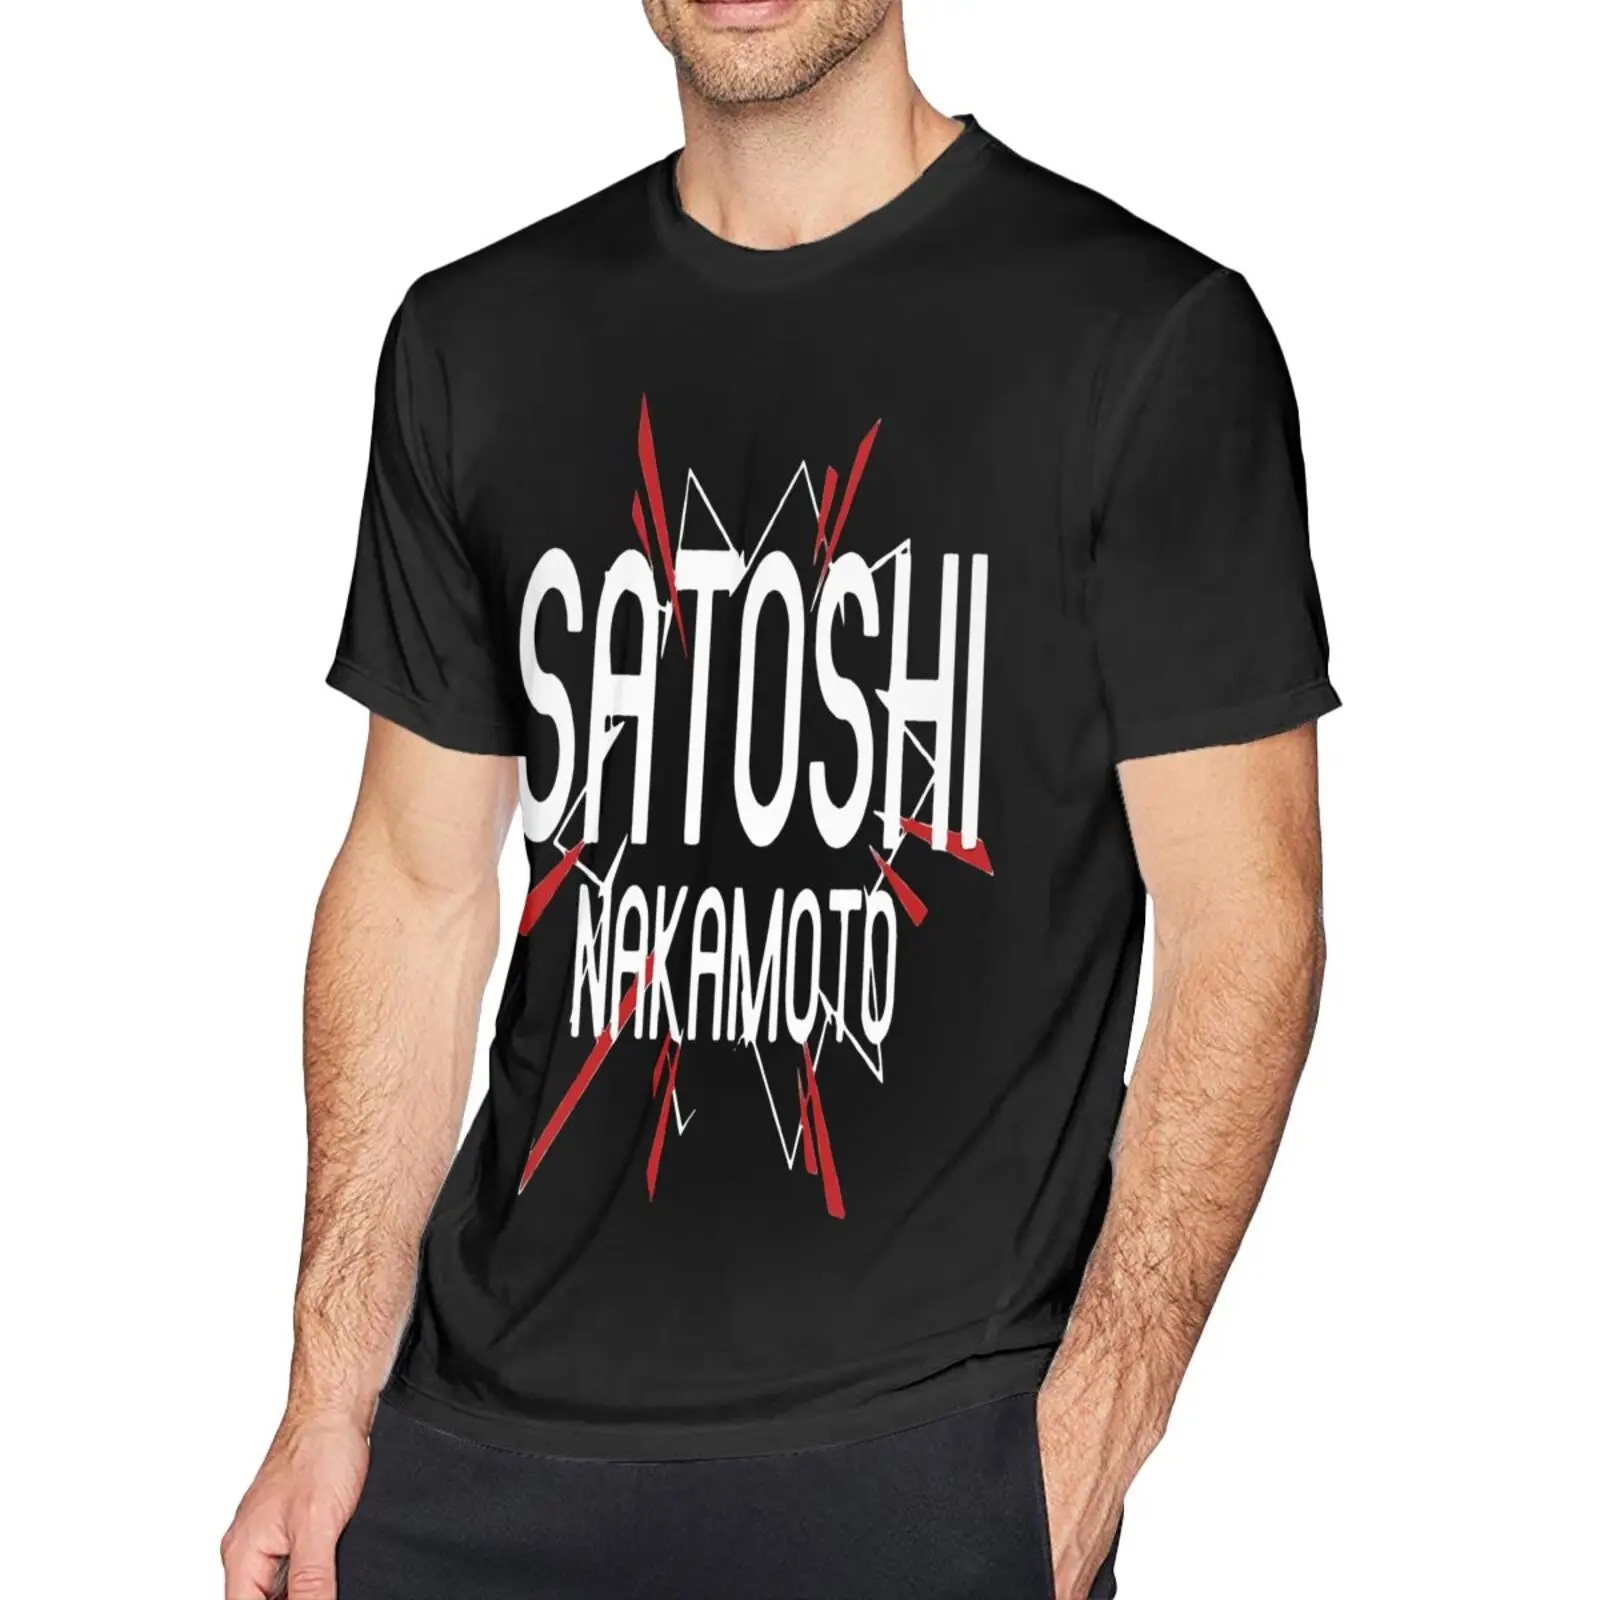 

Мужская футболка Satoshi Nakamoto, Биткойн, Btc, криптовалюты, футболки для мужчин, футболка с принтом манги, футболки оверсайз, футболки с графически...